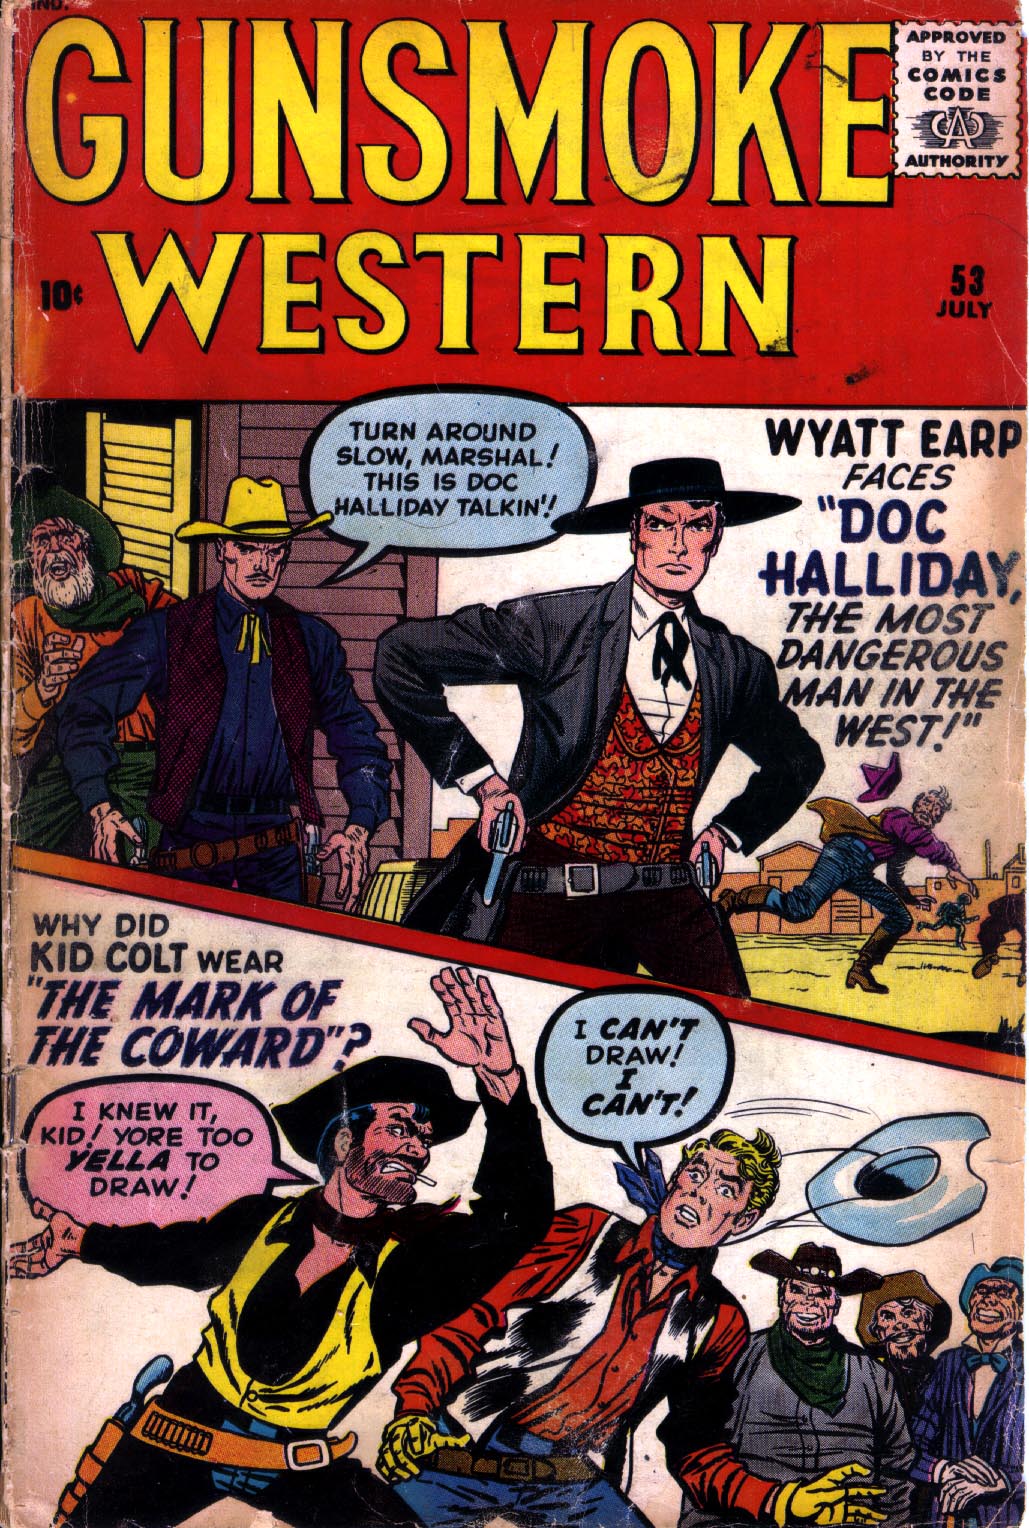 Read online Gunsmoke Western comic -  Issue #53 - 1